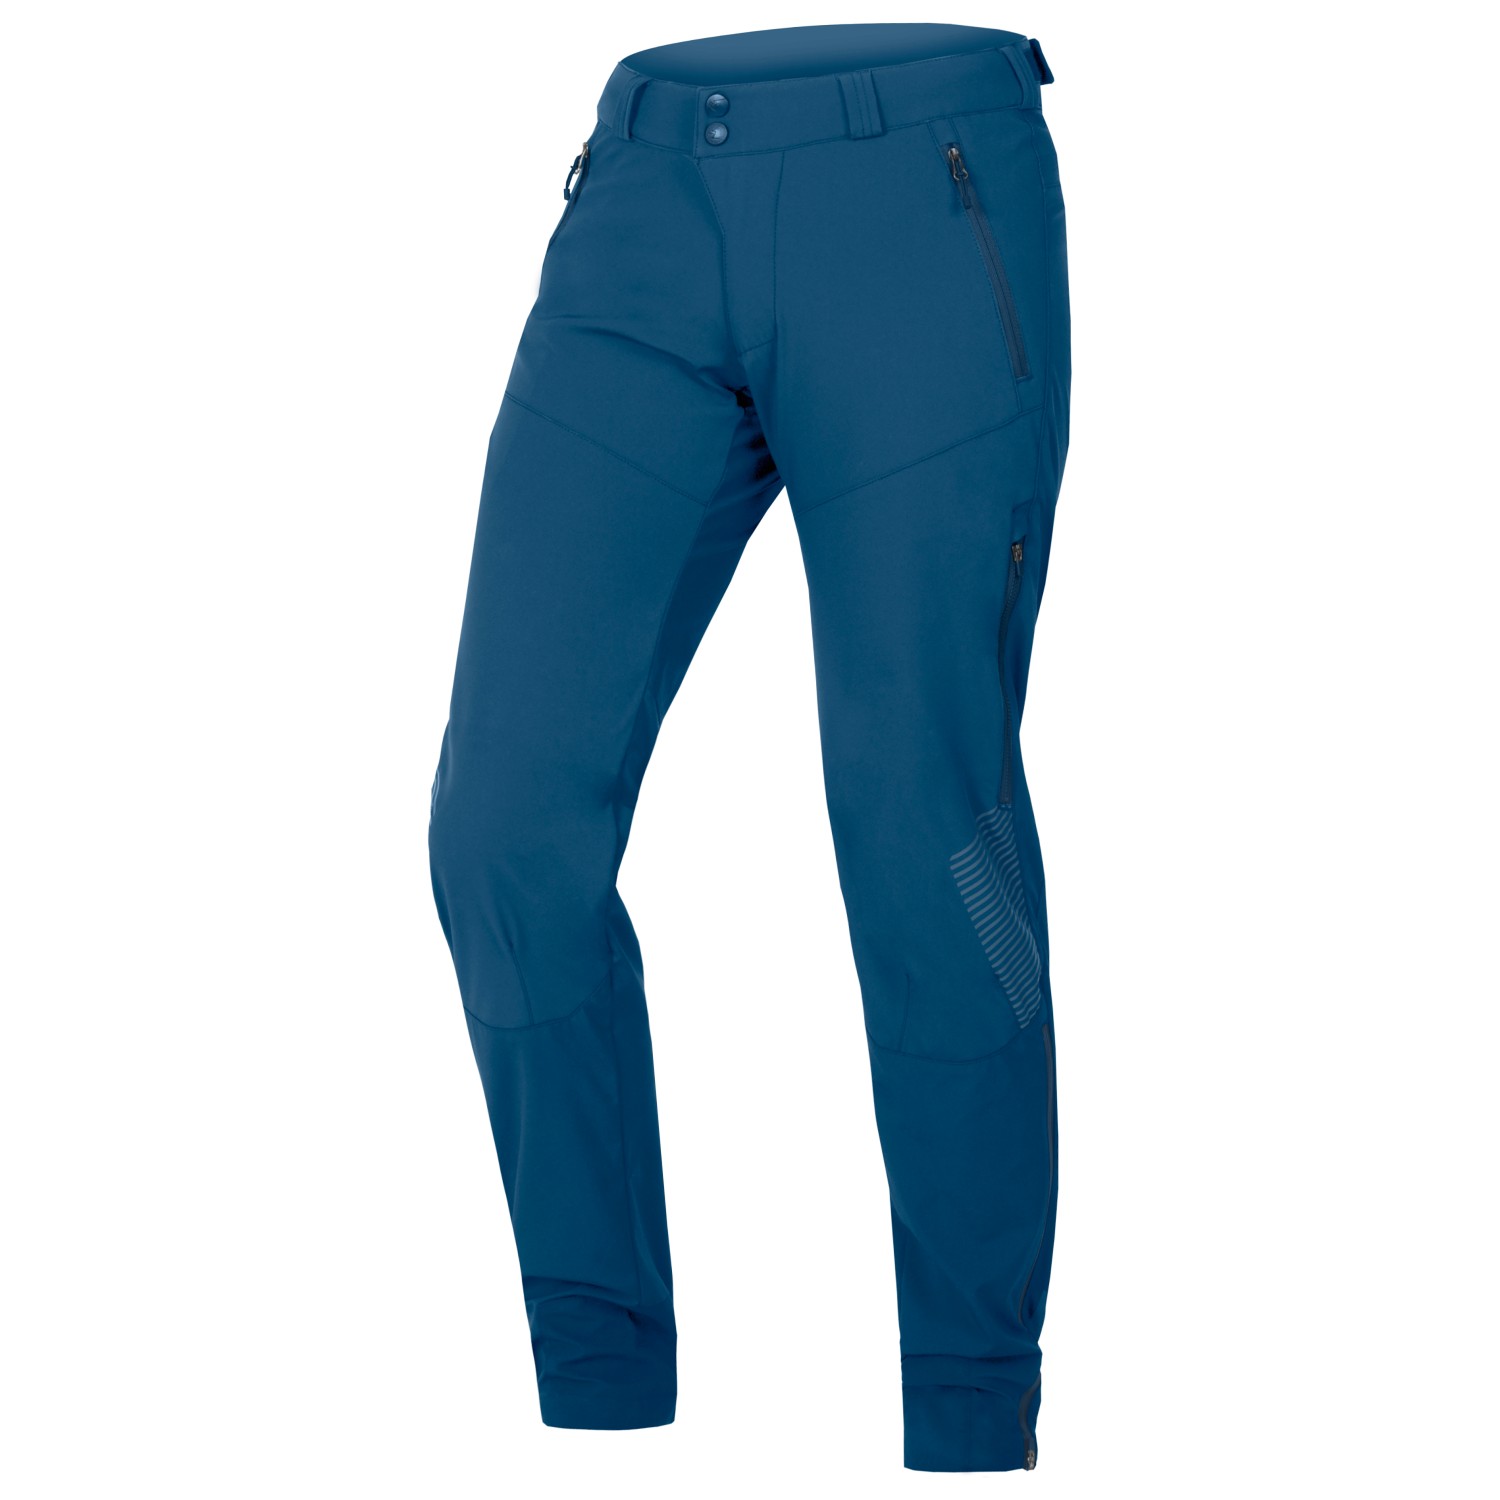 Велосипедные шорты Endura Women's MT500 Spray Baggy Hose II, цвет Blueberry брюки brownyard baggy sweat pants светло бежевый l